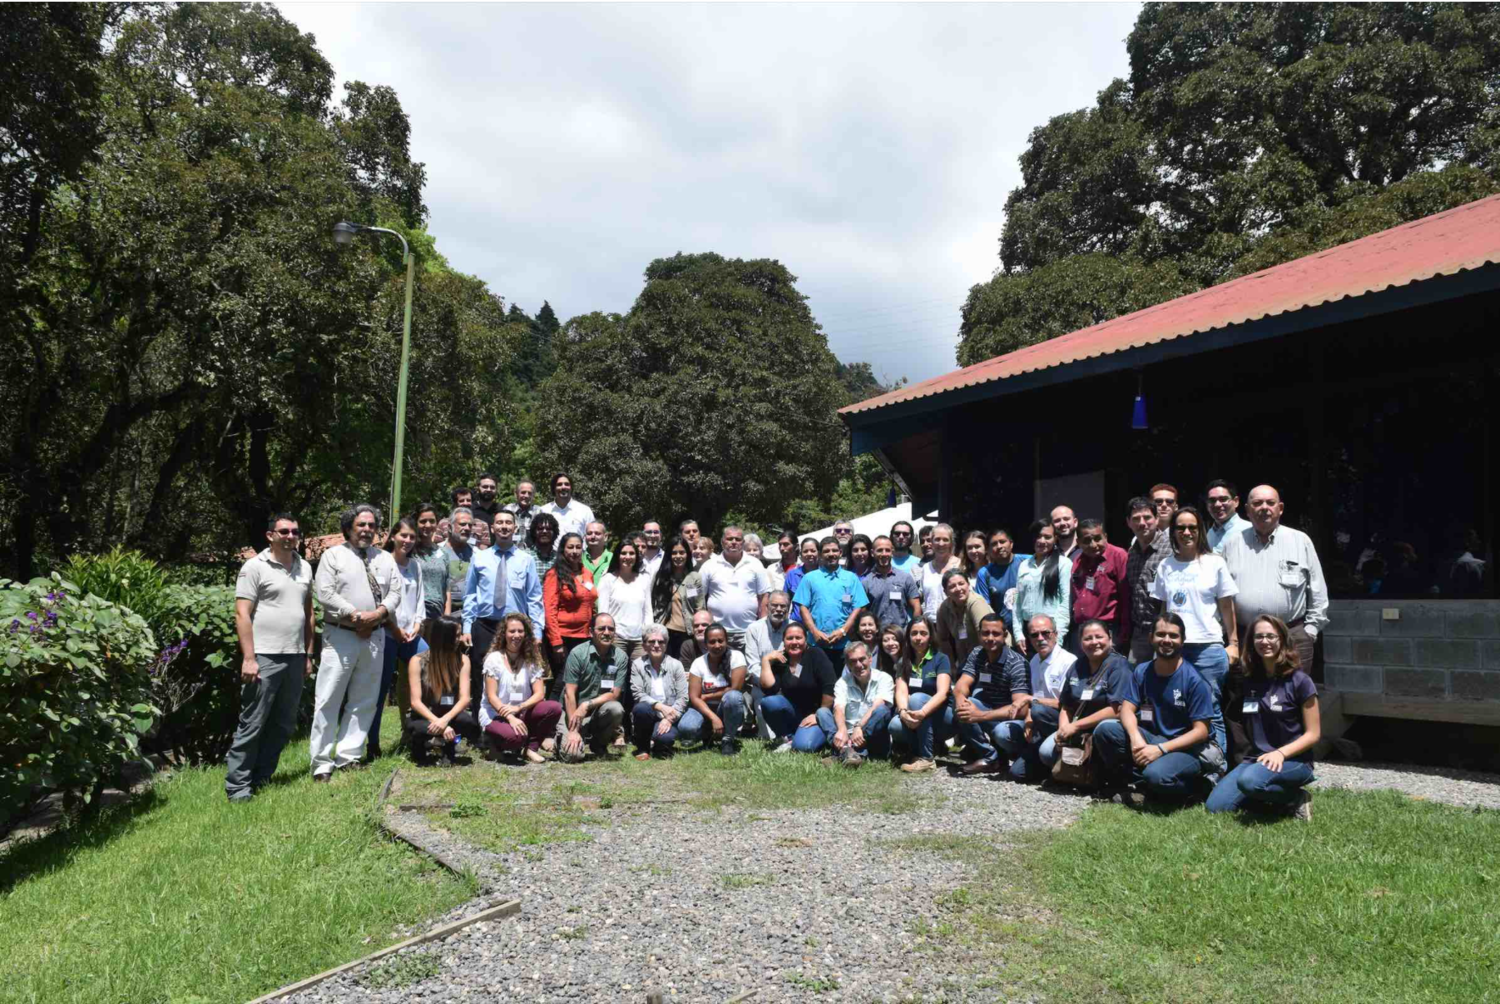 Meet the Free Flow Champion: Alianza Nacional Rios y Cuencas de Costa Rica